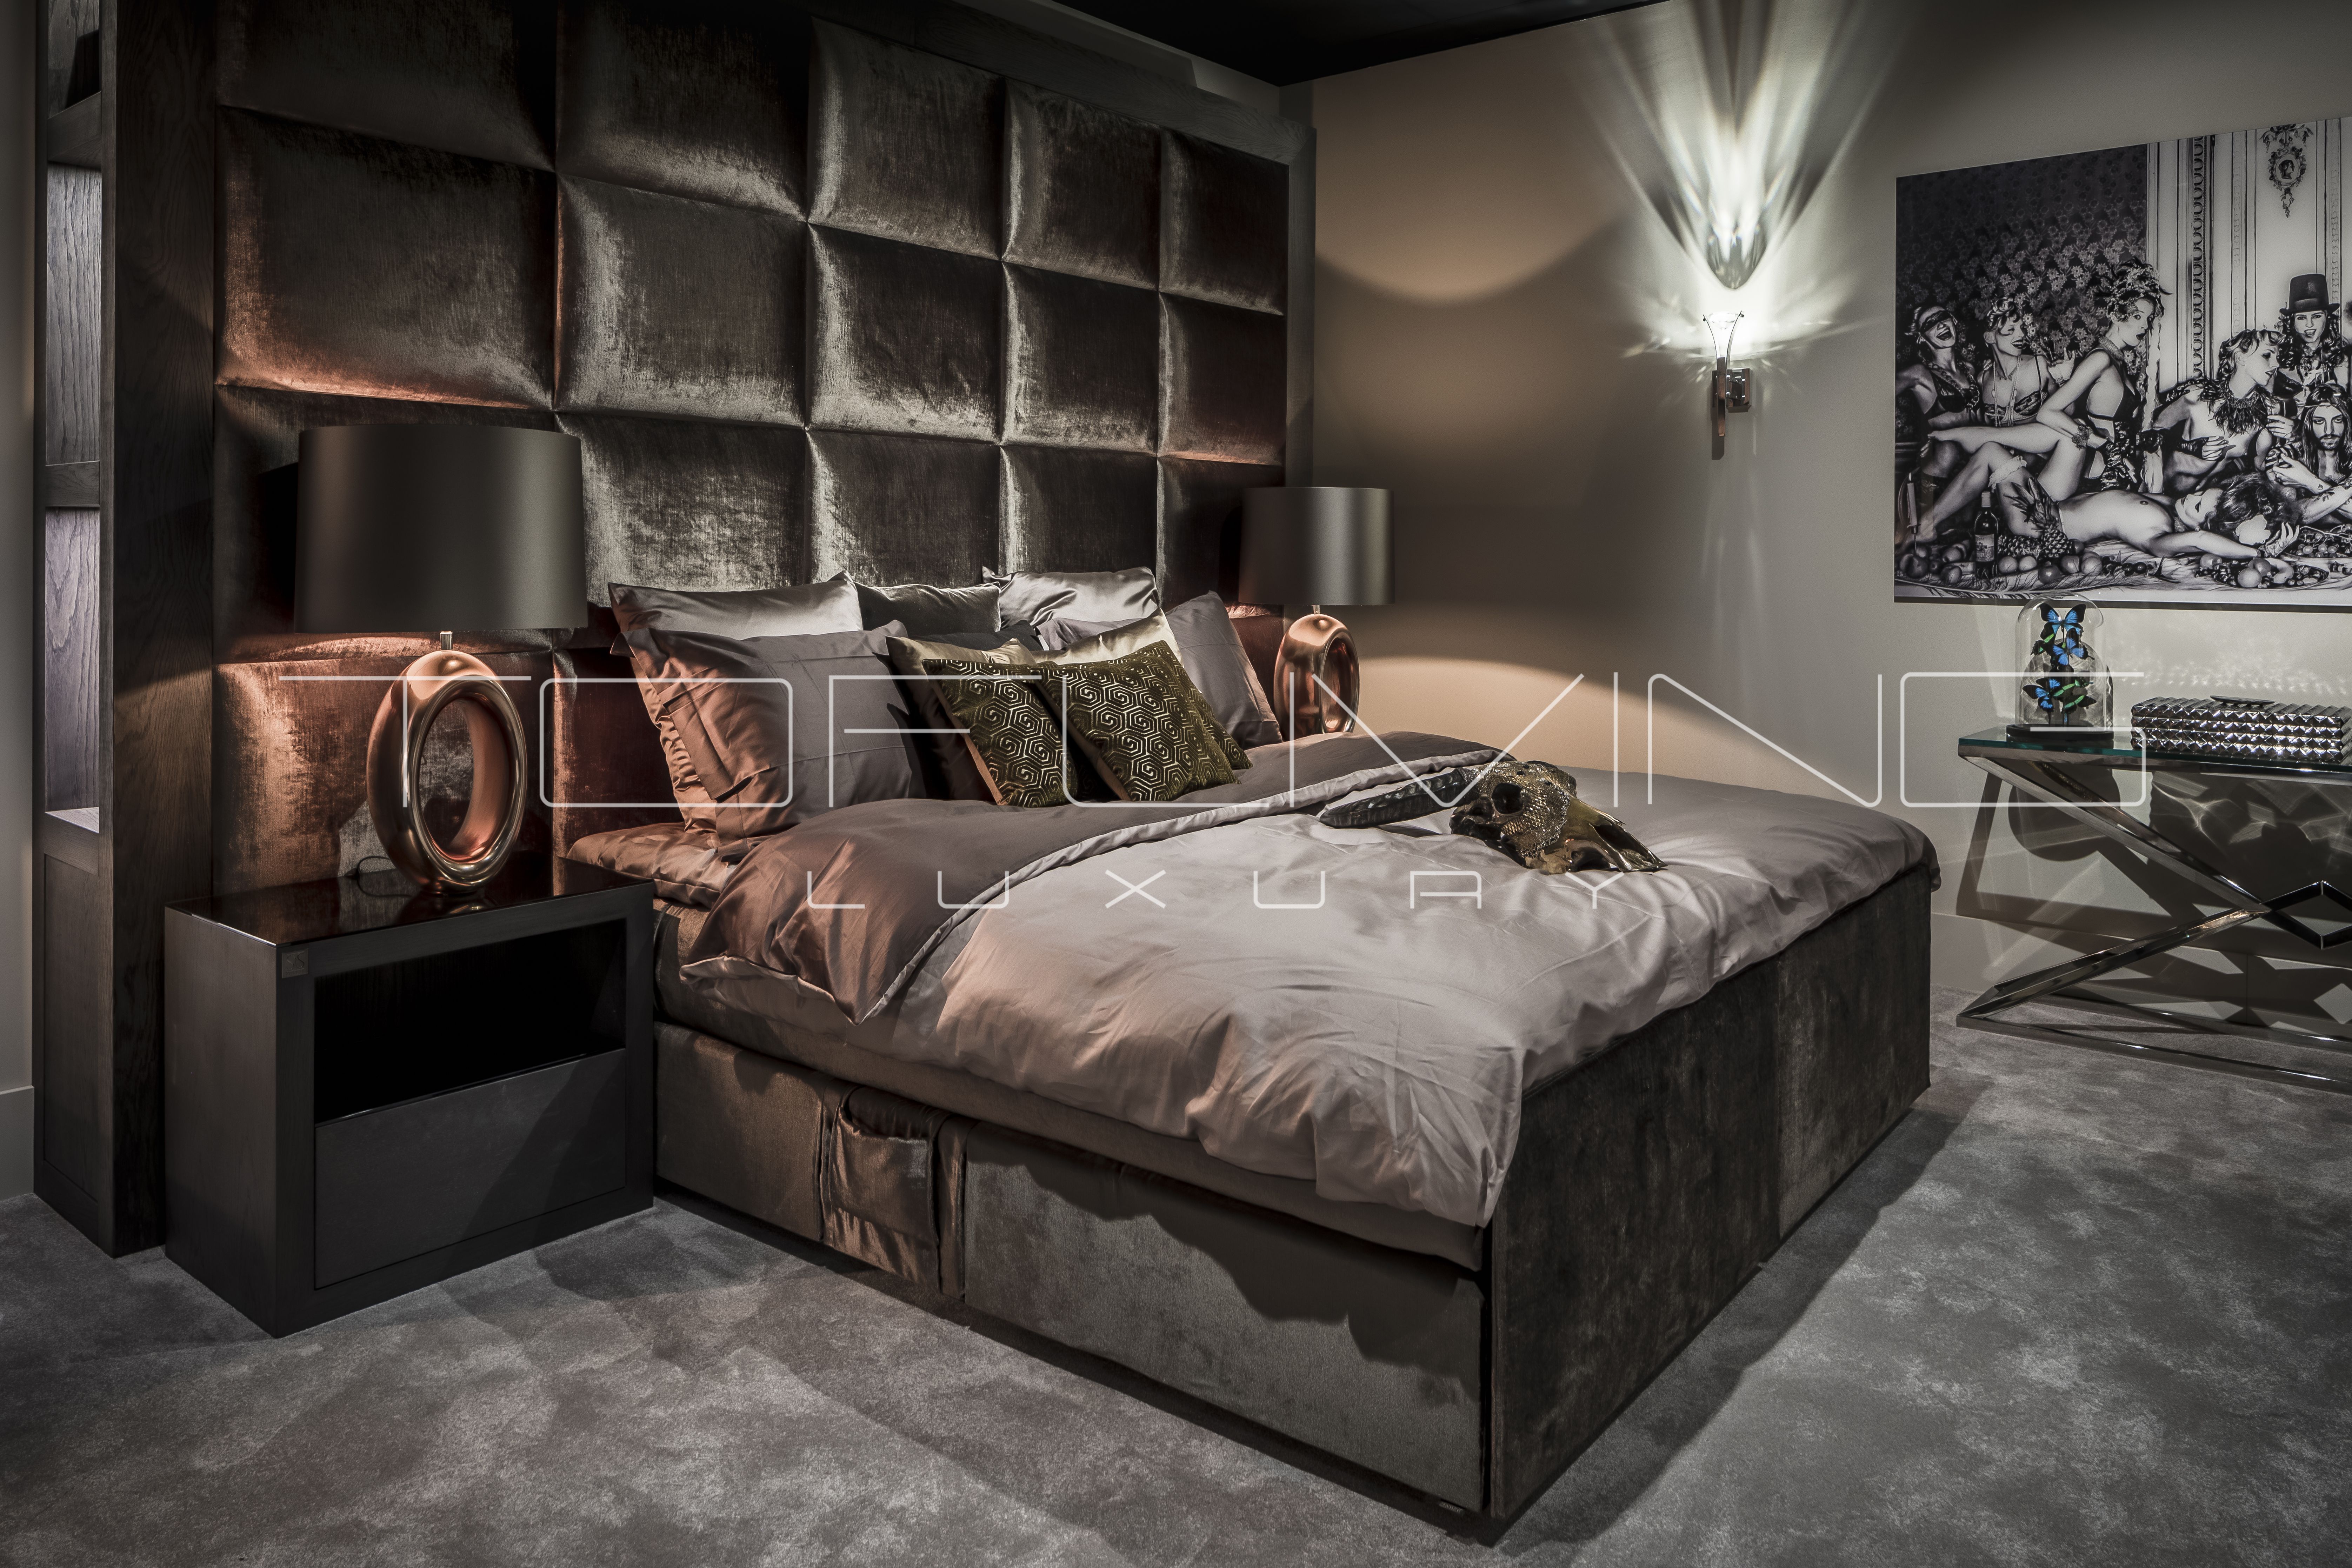 Tofliving Luxury || Bedroom slaapkamer - Tofliving Luxury || Bedroom slaapkamer -   14 diy Interieur luxe ideas